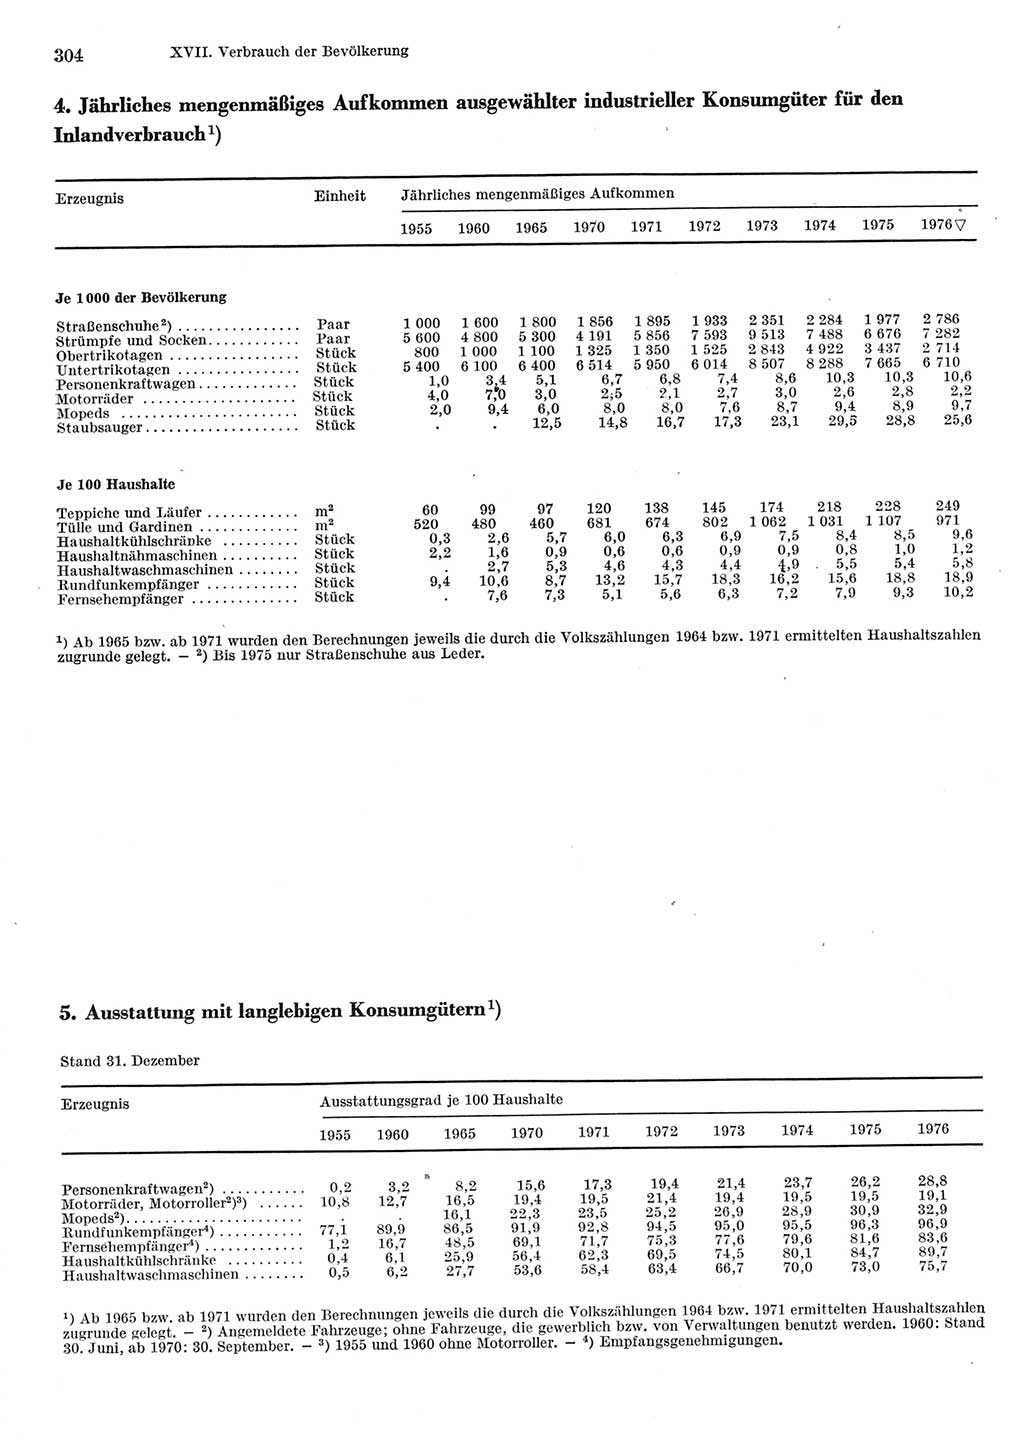 Statistisches Jahrbuch der Deutschen Demokratischen Republik (DDR) 1977, Seite 304 (Stat. Jb. DDR 1977, S. 304)